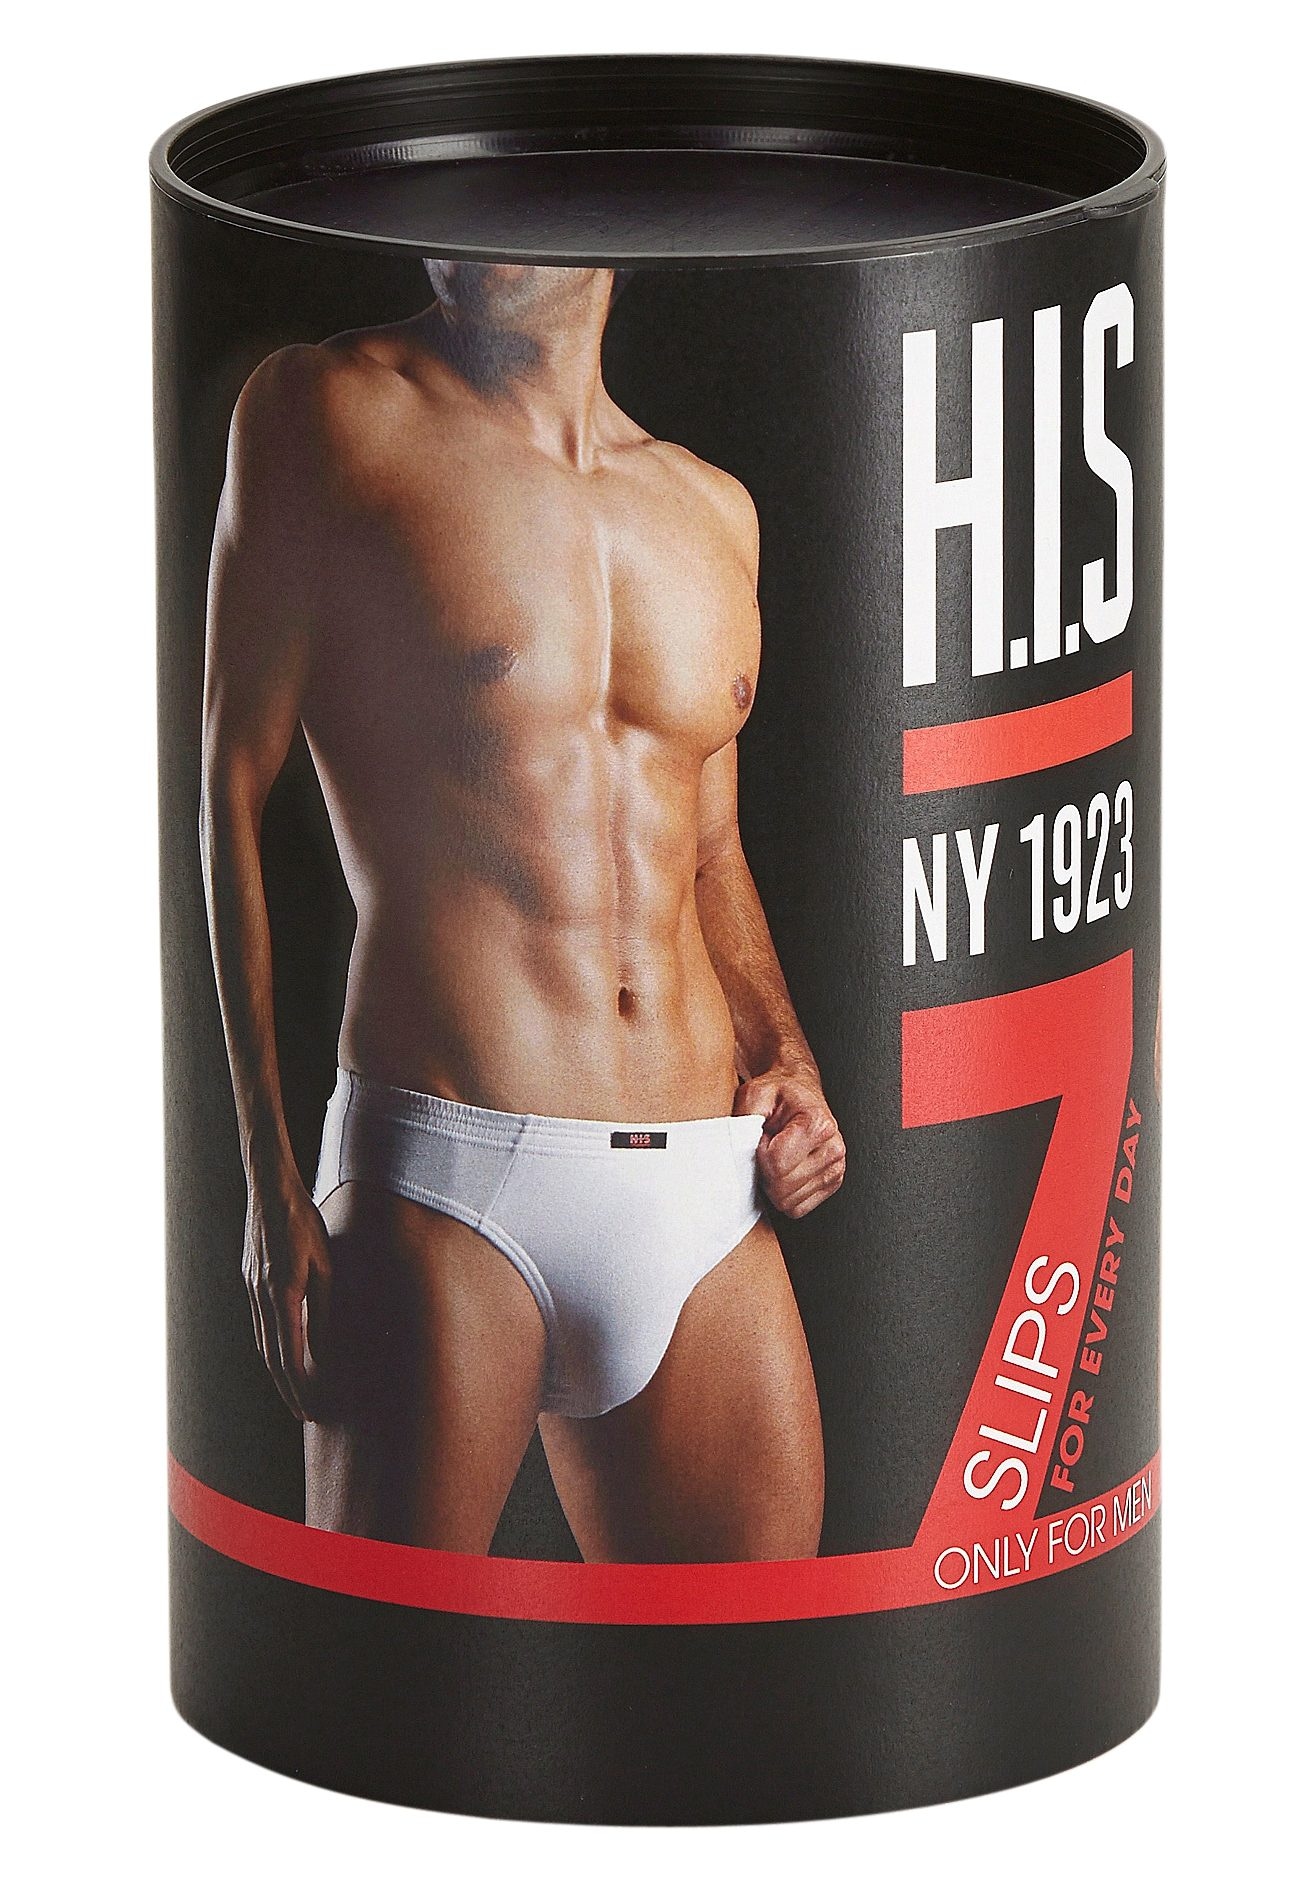 H.I.S Slip »Unterhosen für Herren«, (Packung, 7 St.), aus Baumwoll-Mix